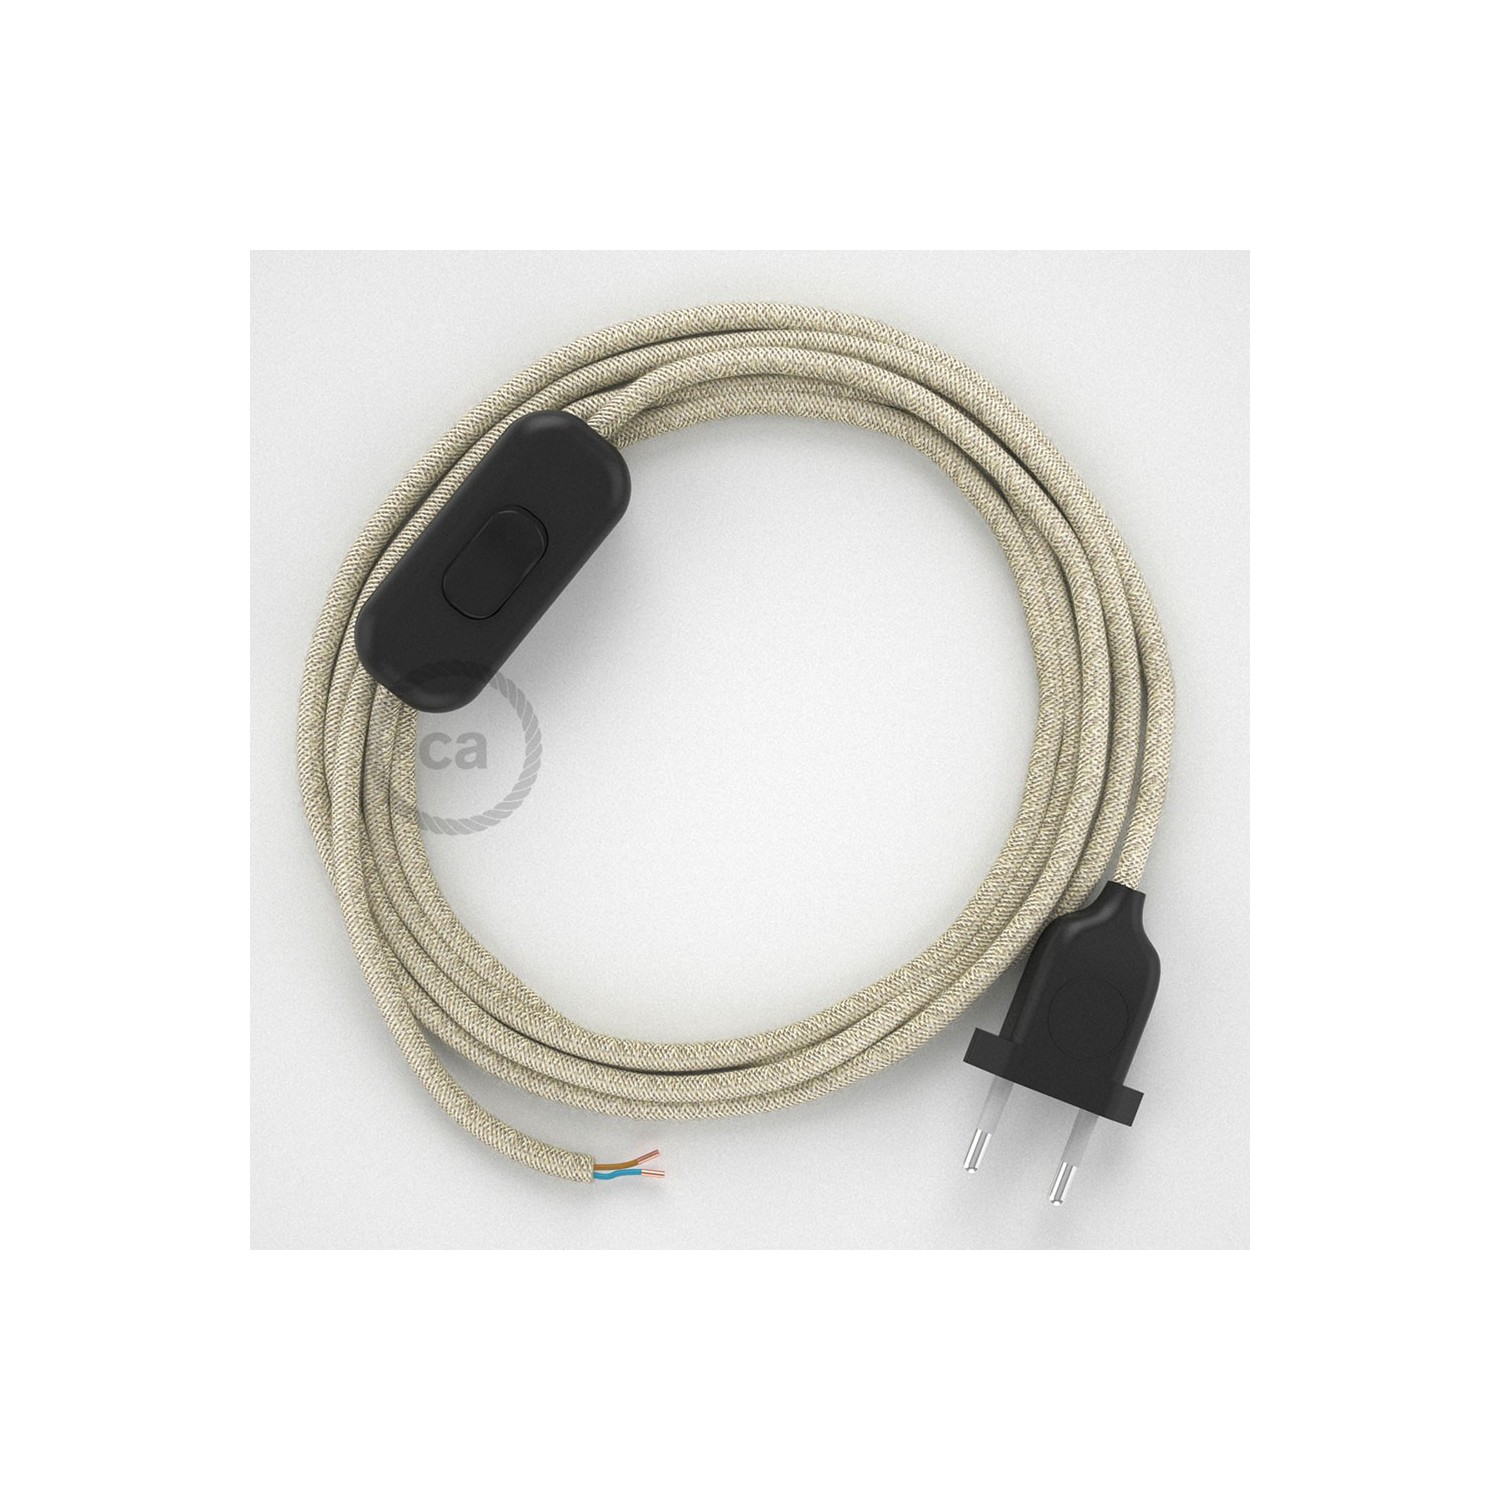 Cableado para lámpara, cable RN01 Lino Natural Neutro 1,8m. Elige tu el color de la clavija y del interruptor!